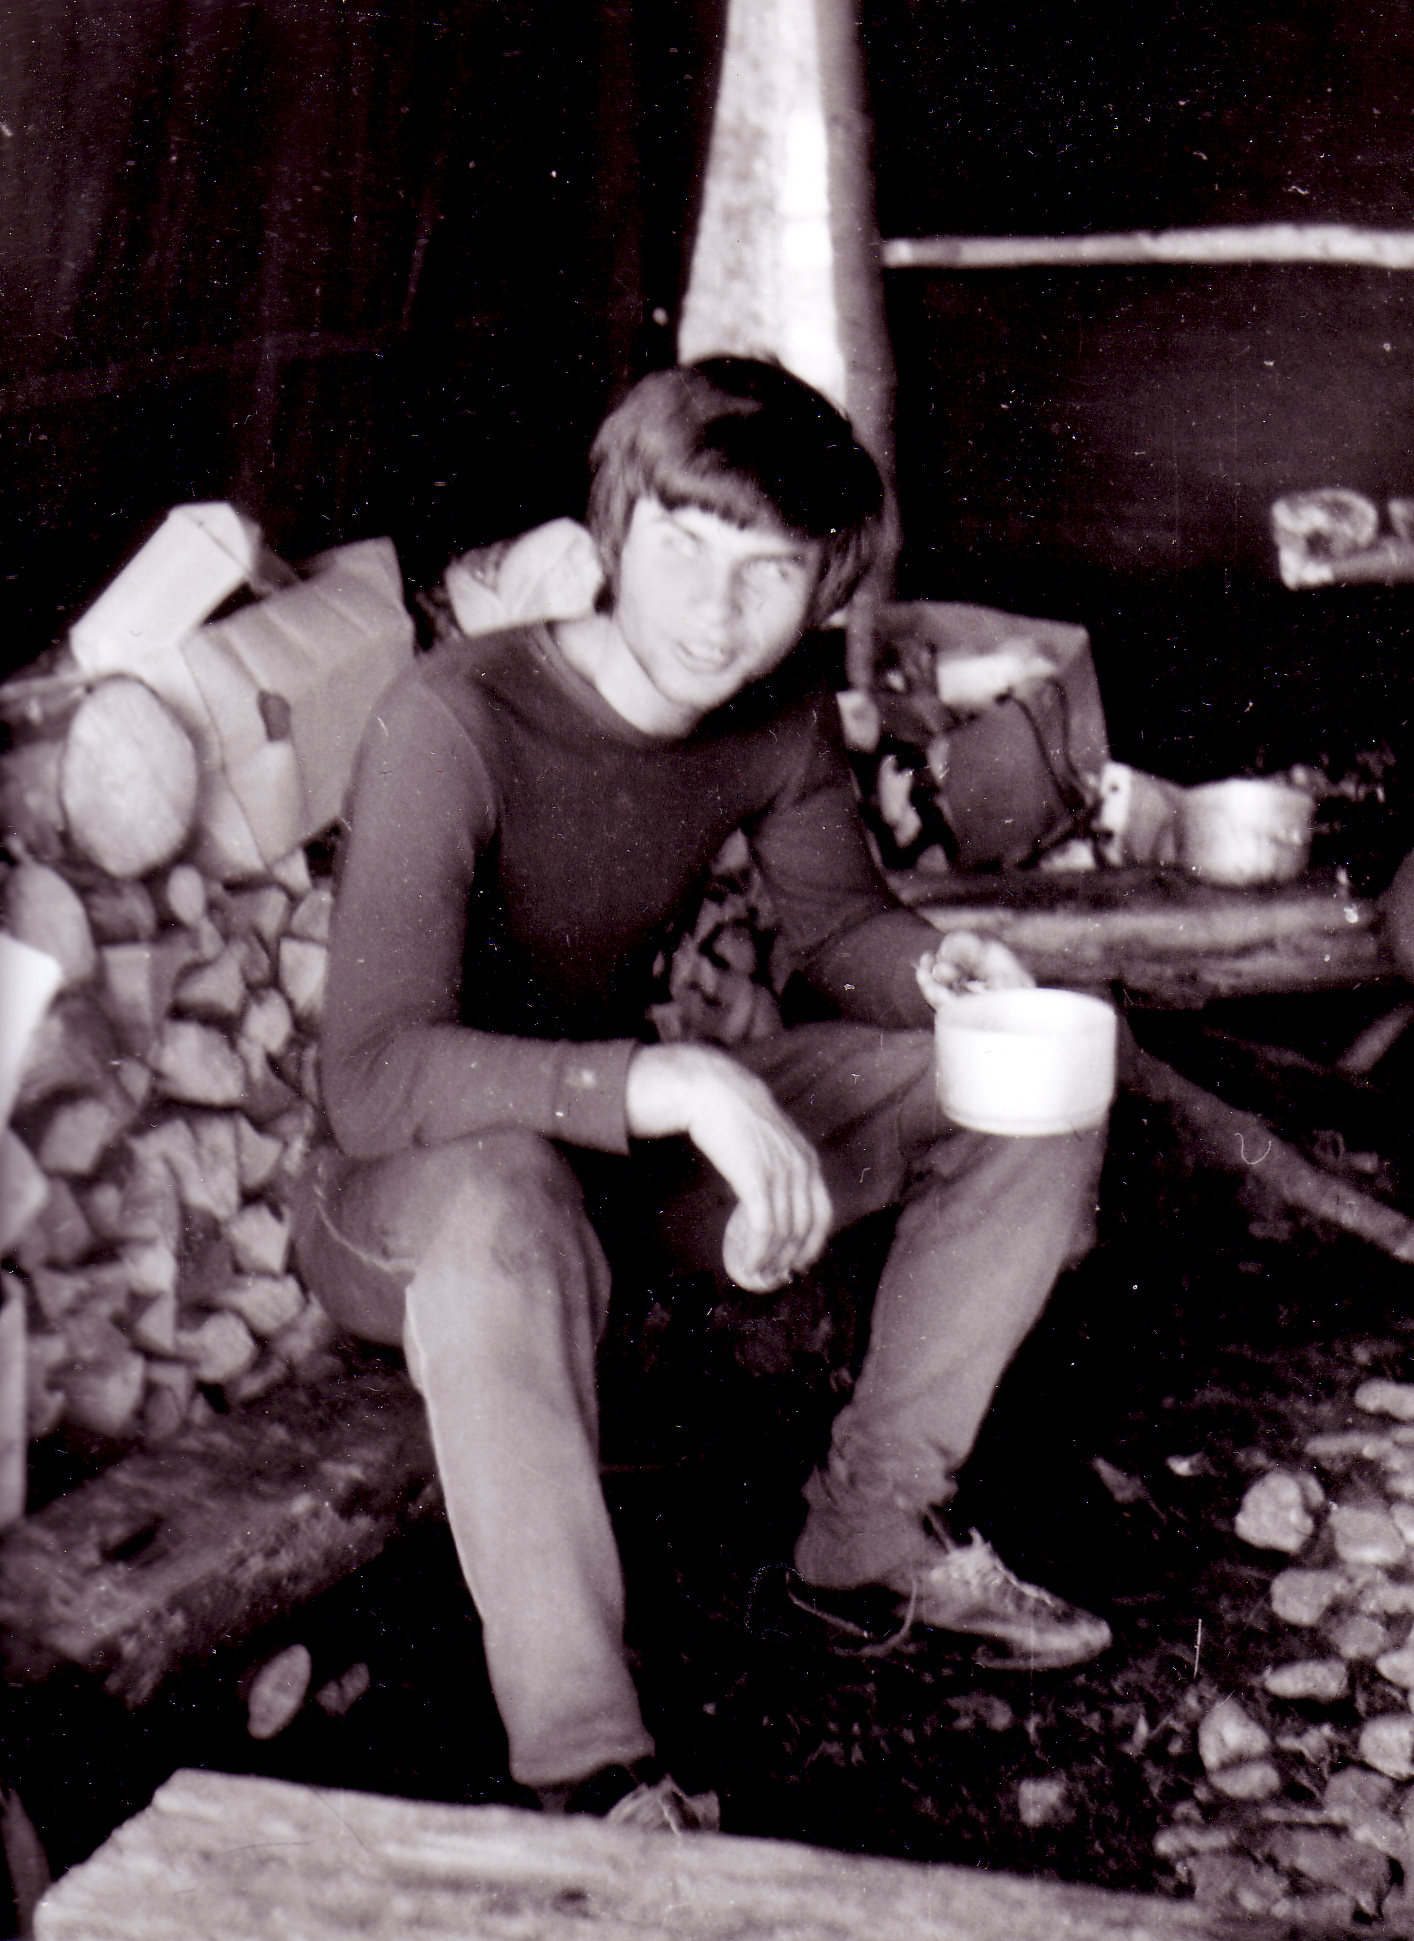 Jiří Zajíc camping; ca. 1975
